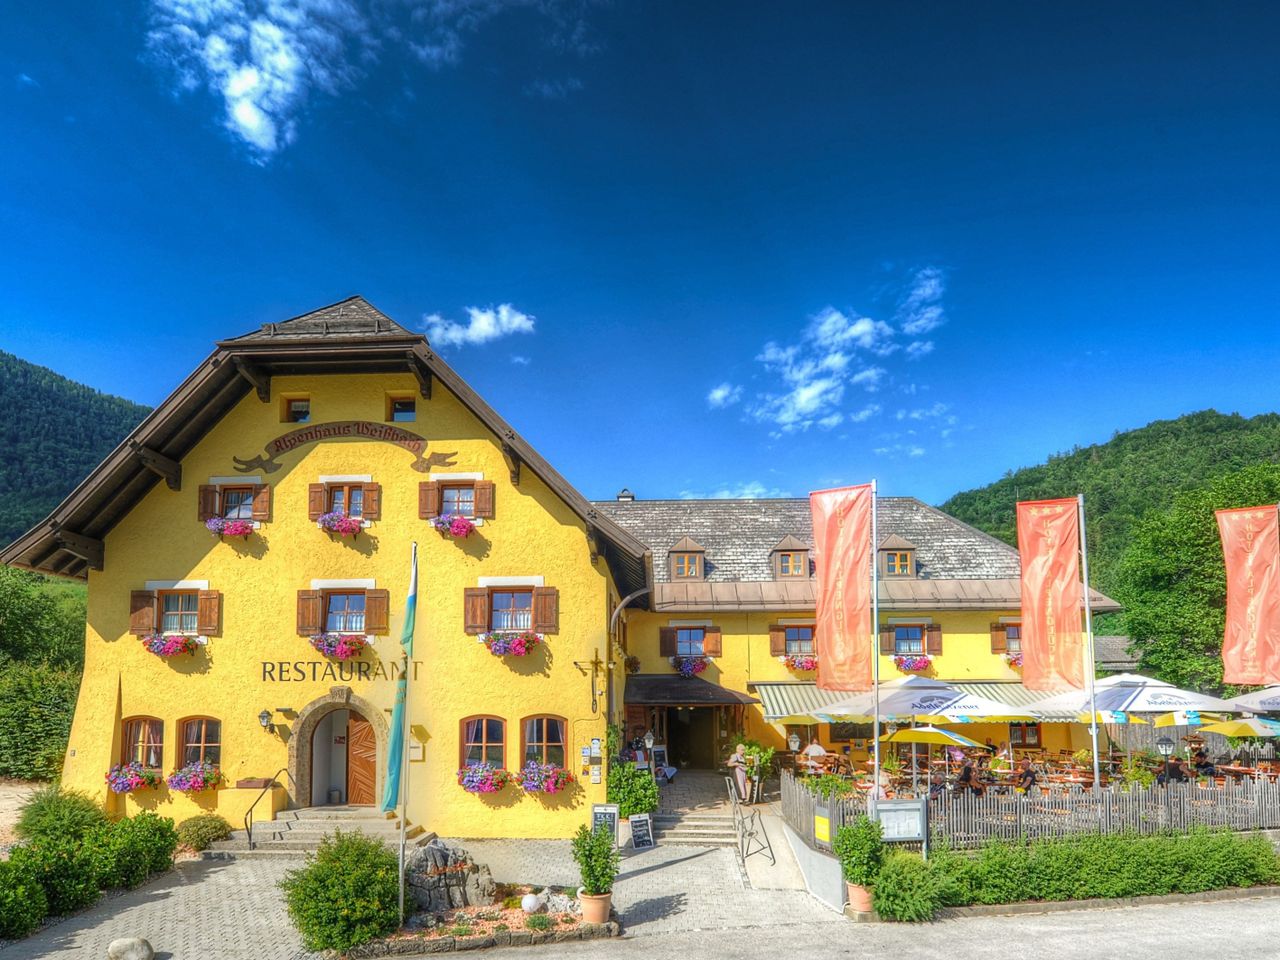 5 Tage das Berchtesgadener Land erkunden